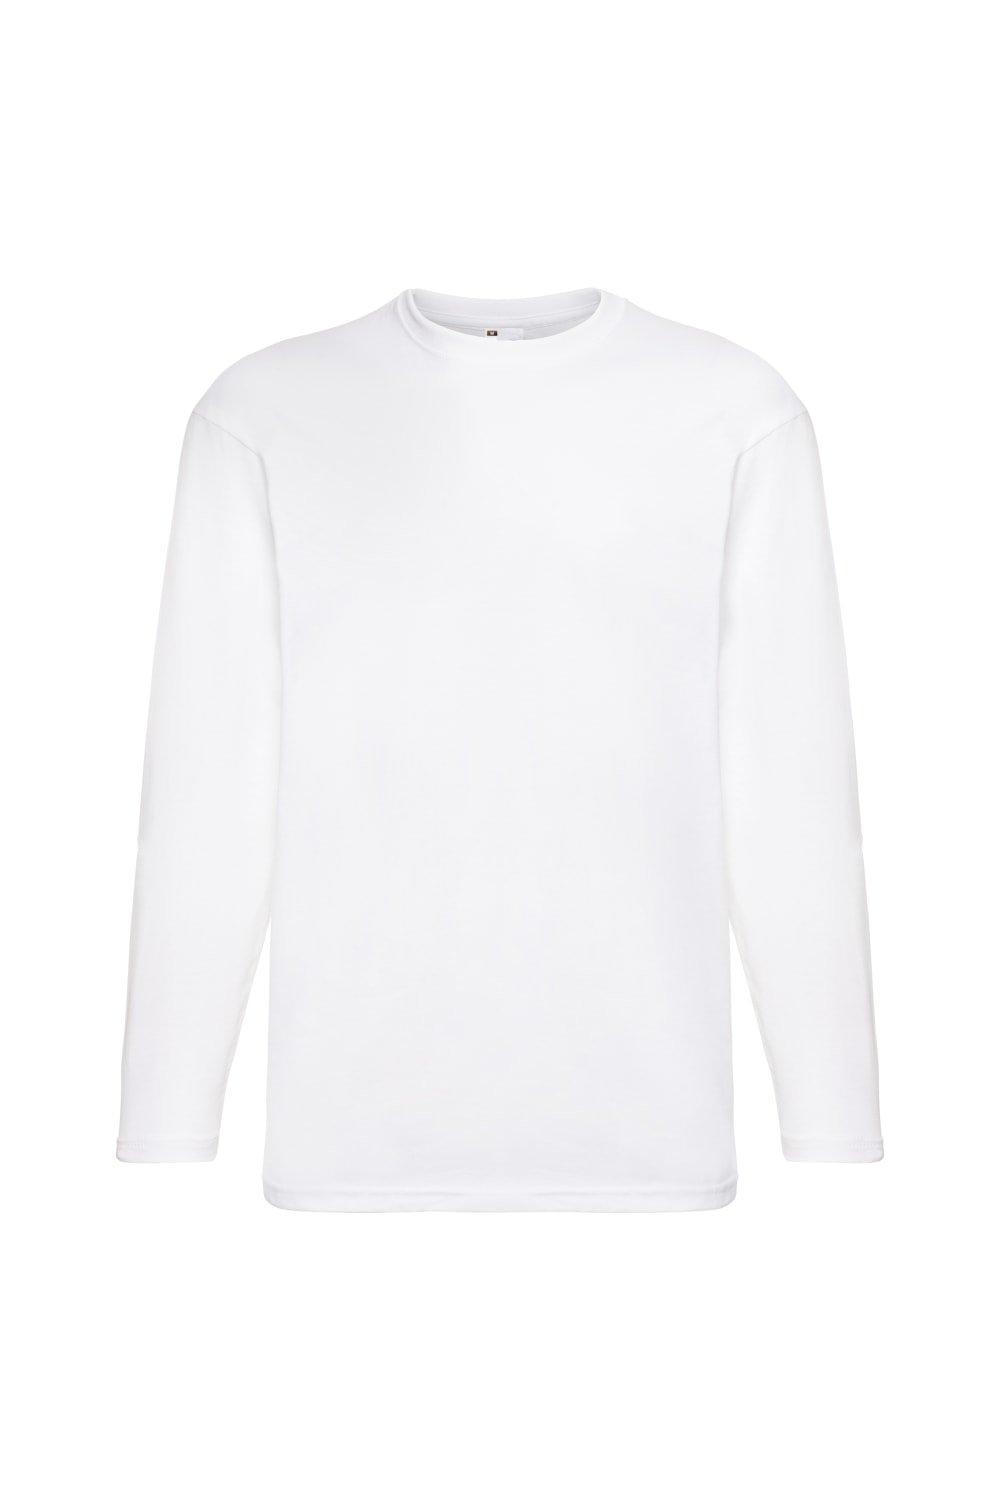 Повседневная футболка Value с длинным рукавом Universal Textiles, белый мужская футболка ретро кассета 2xl серый меланж